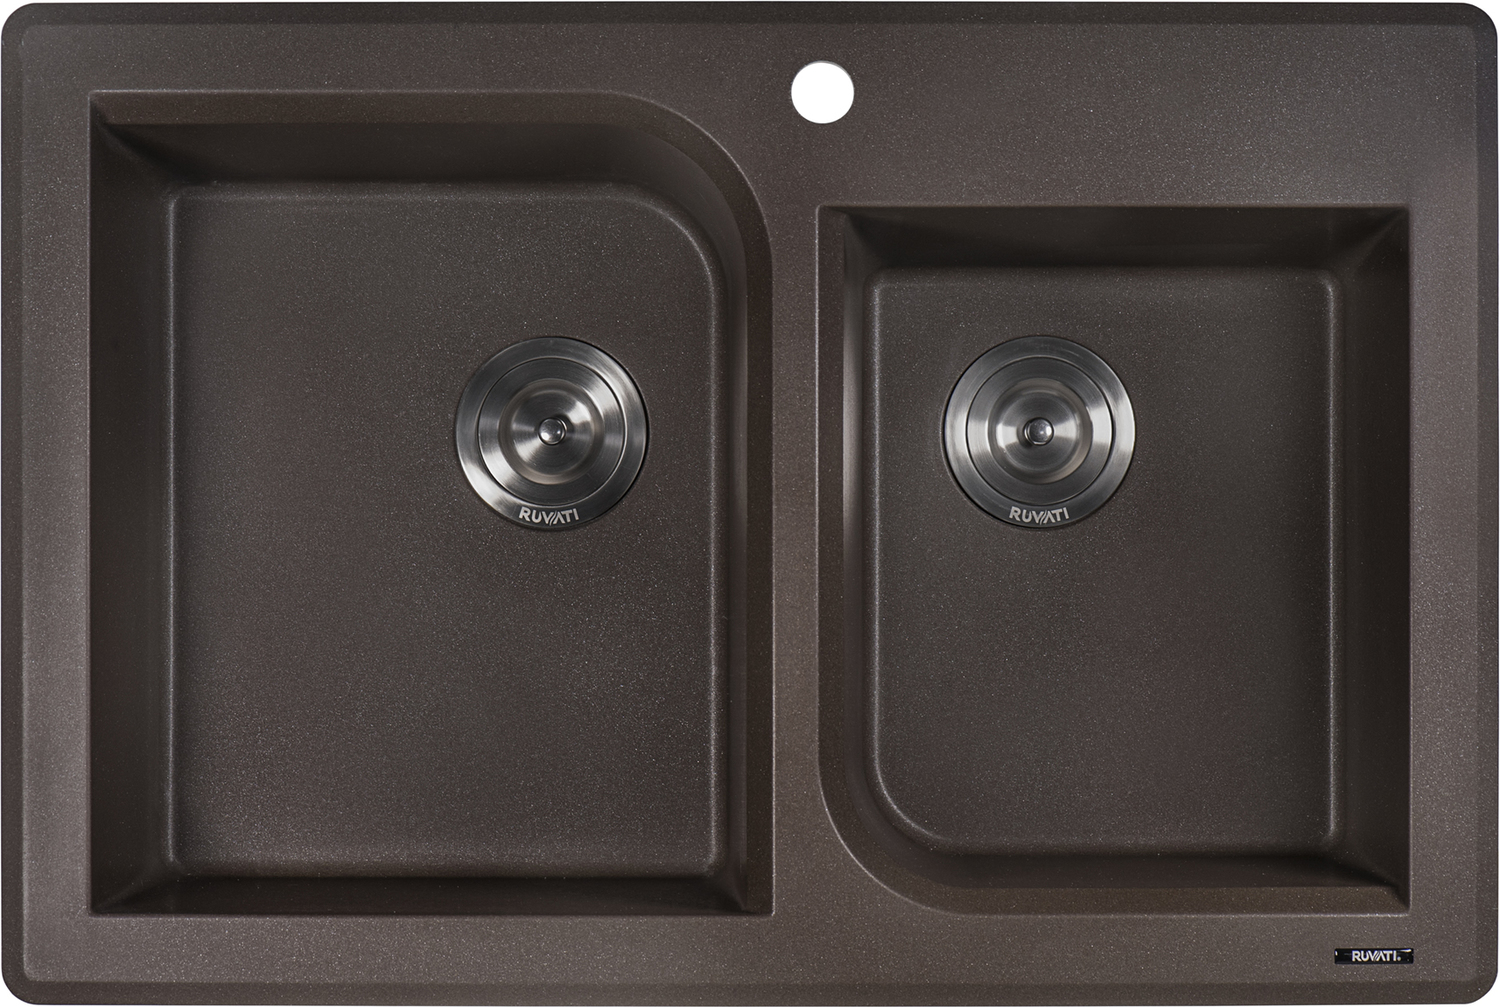 16 gauge stainless steel undermount kitchen sink Ruvati Kitchen Sink Espresso / Coffee Brown